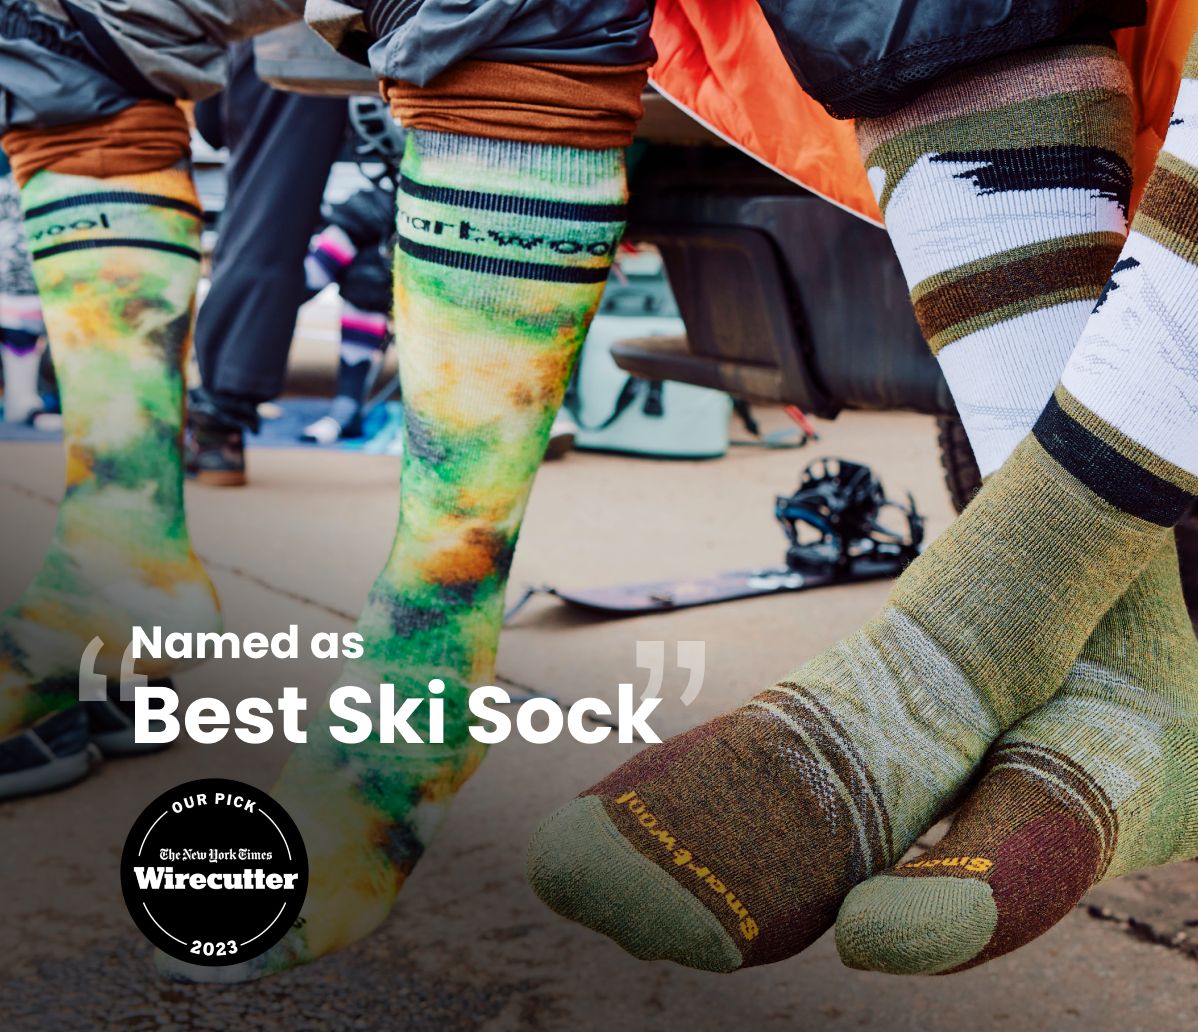 Named Best Ski Sock.